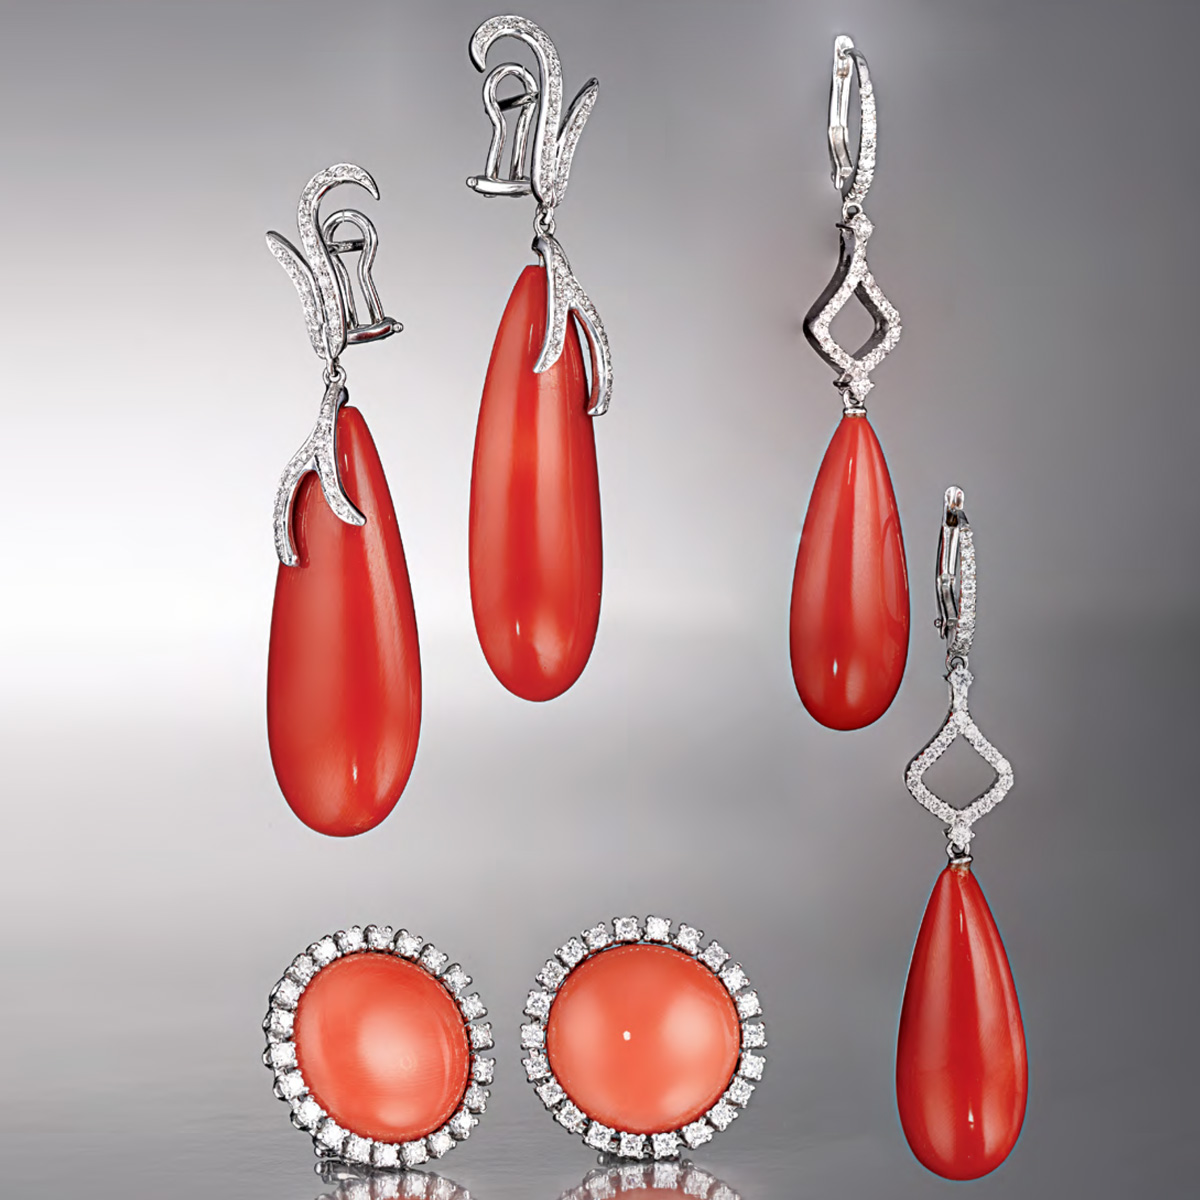 Orecchini Corallo - Coral earrings